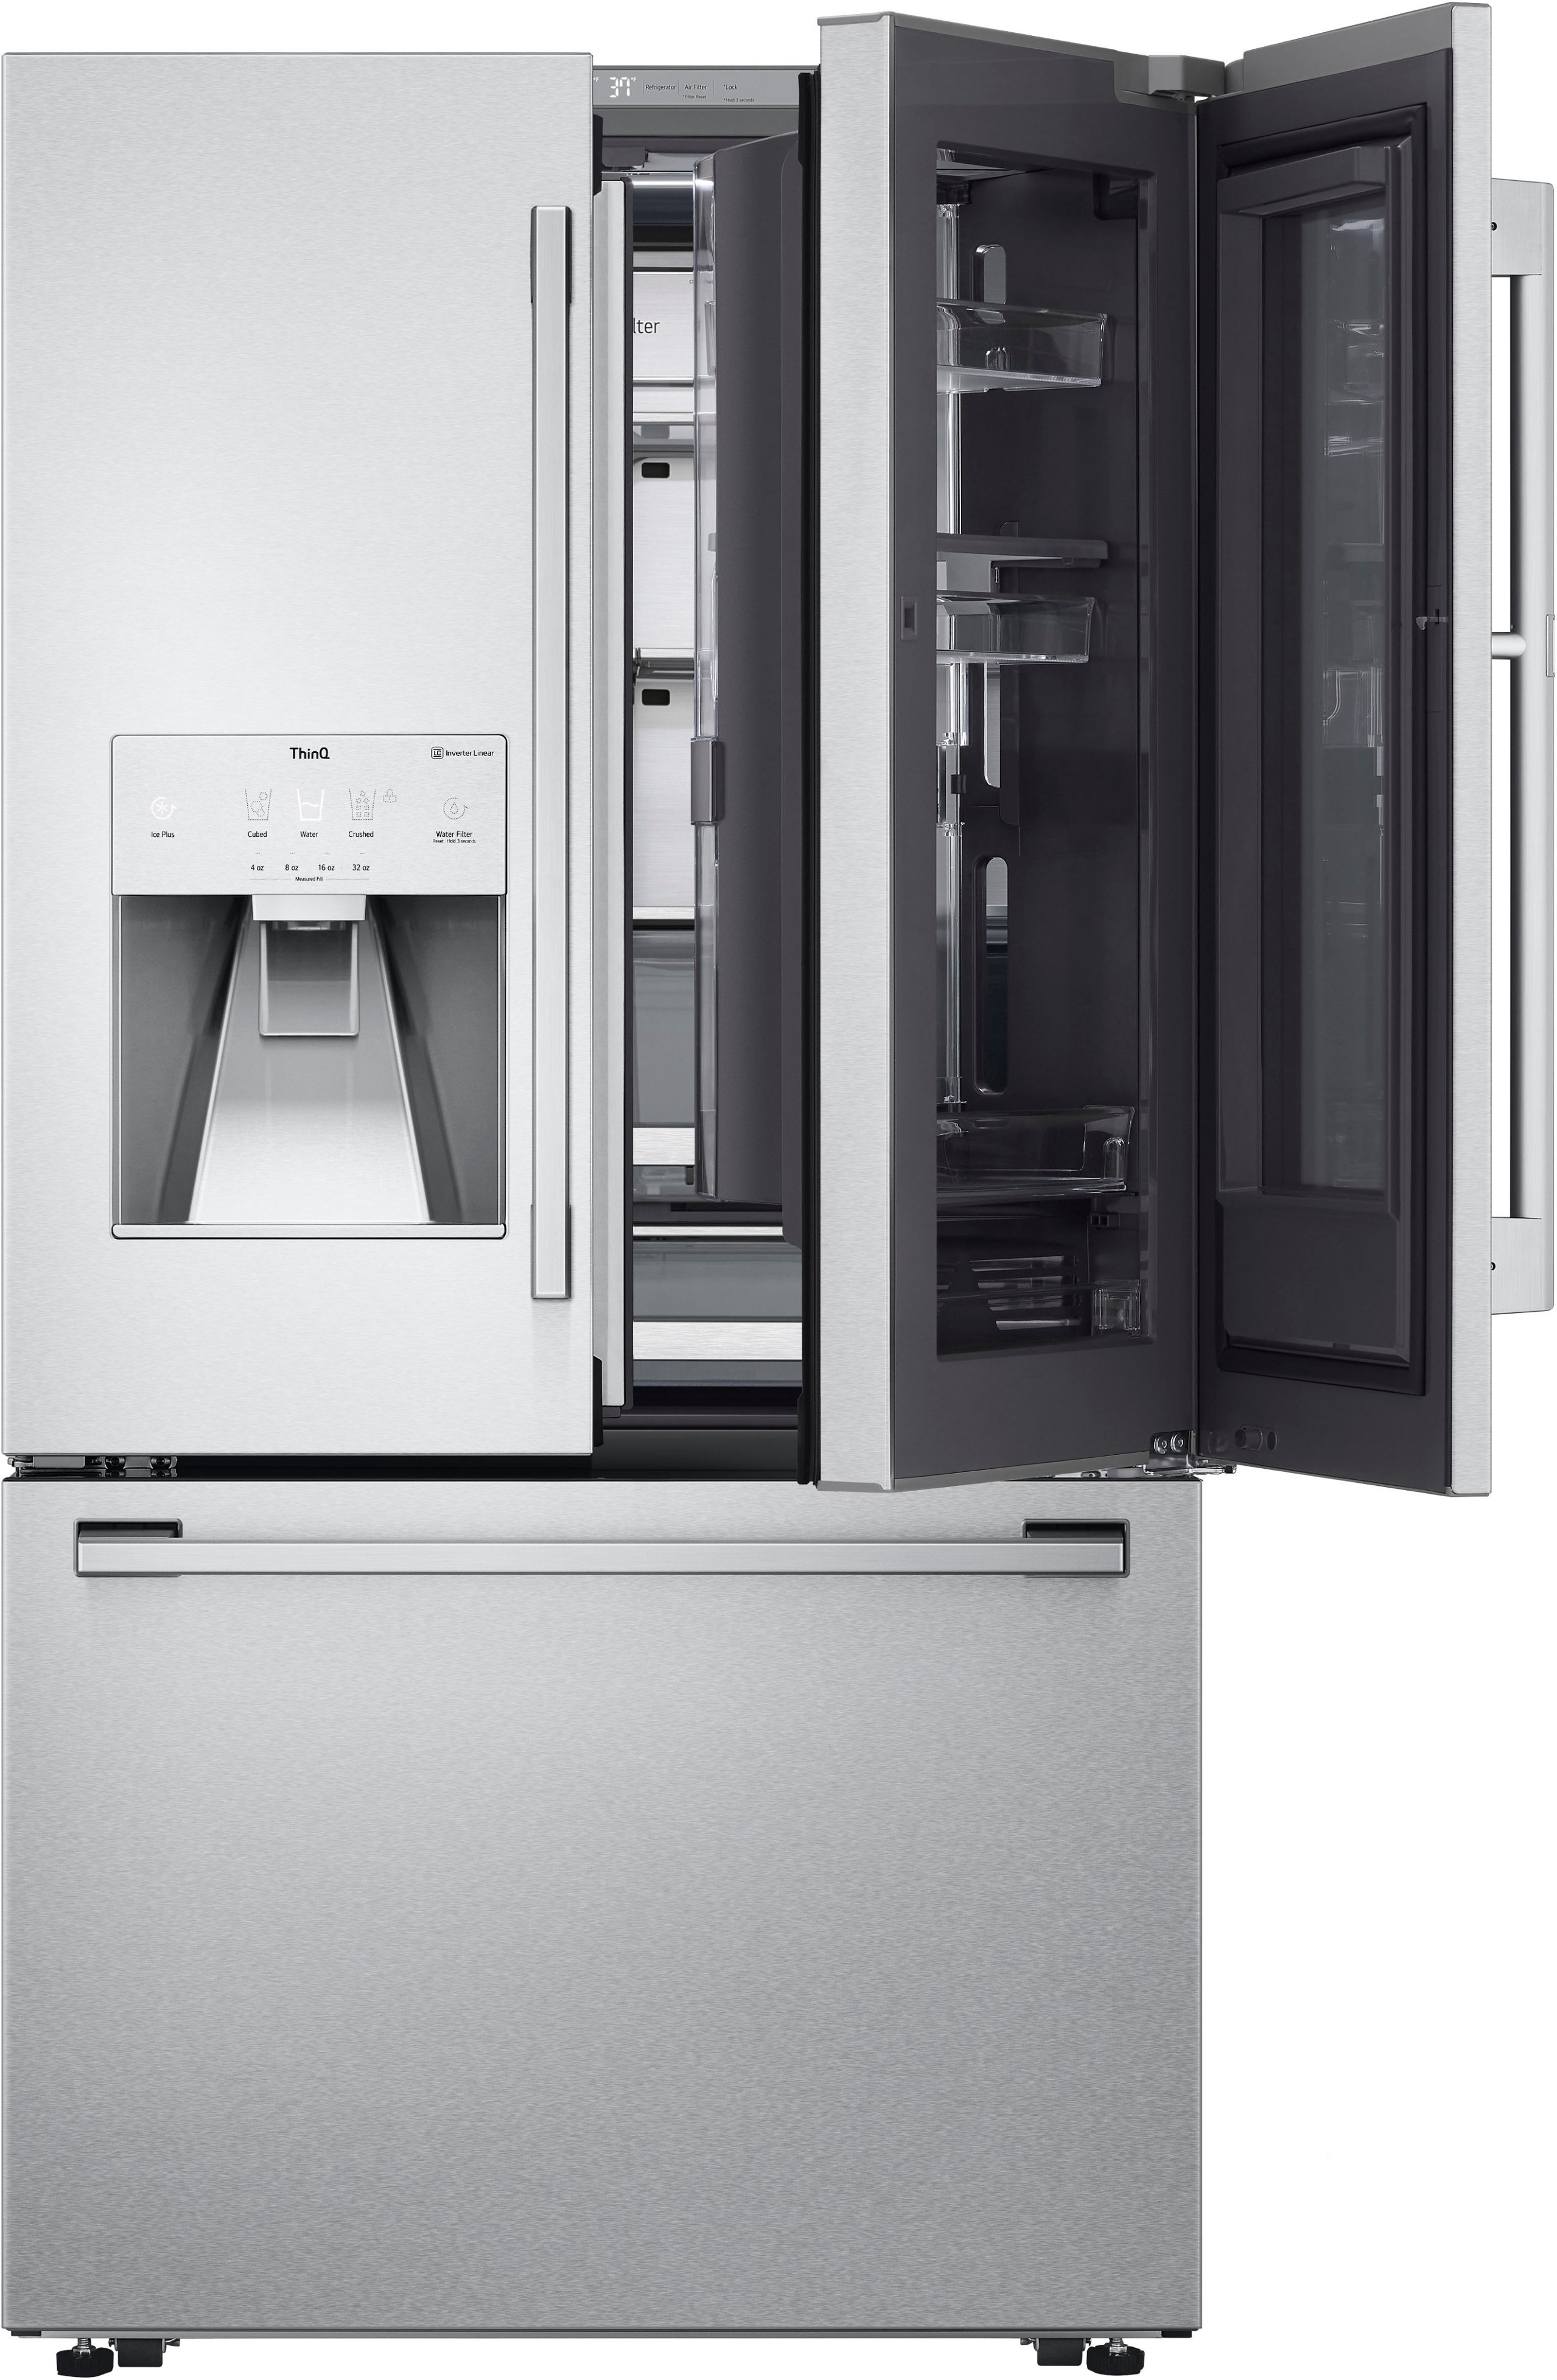 LG's Door-in-Door fridge comes with a magic window now - CNET